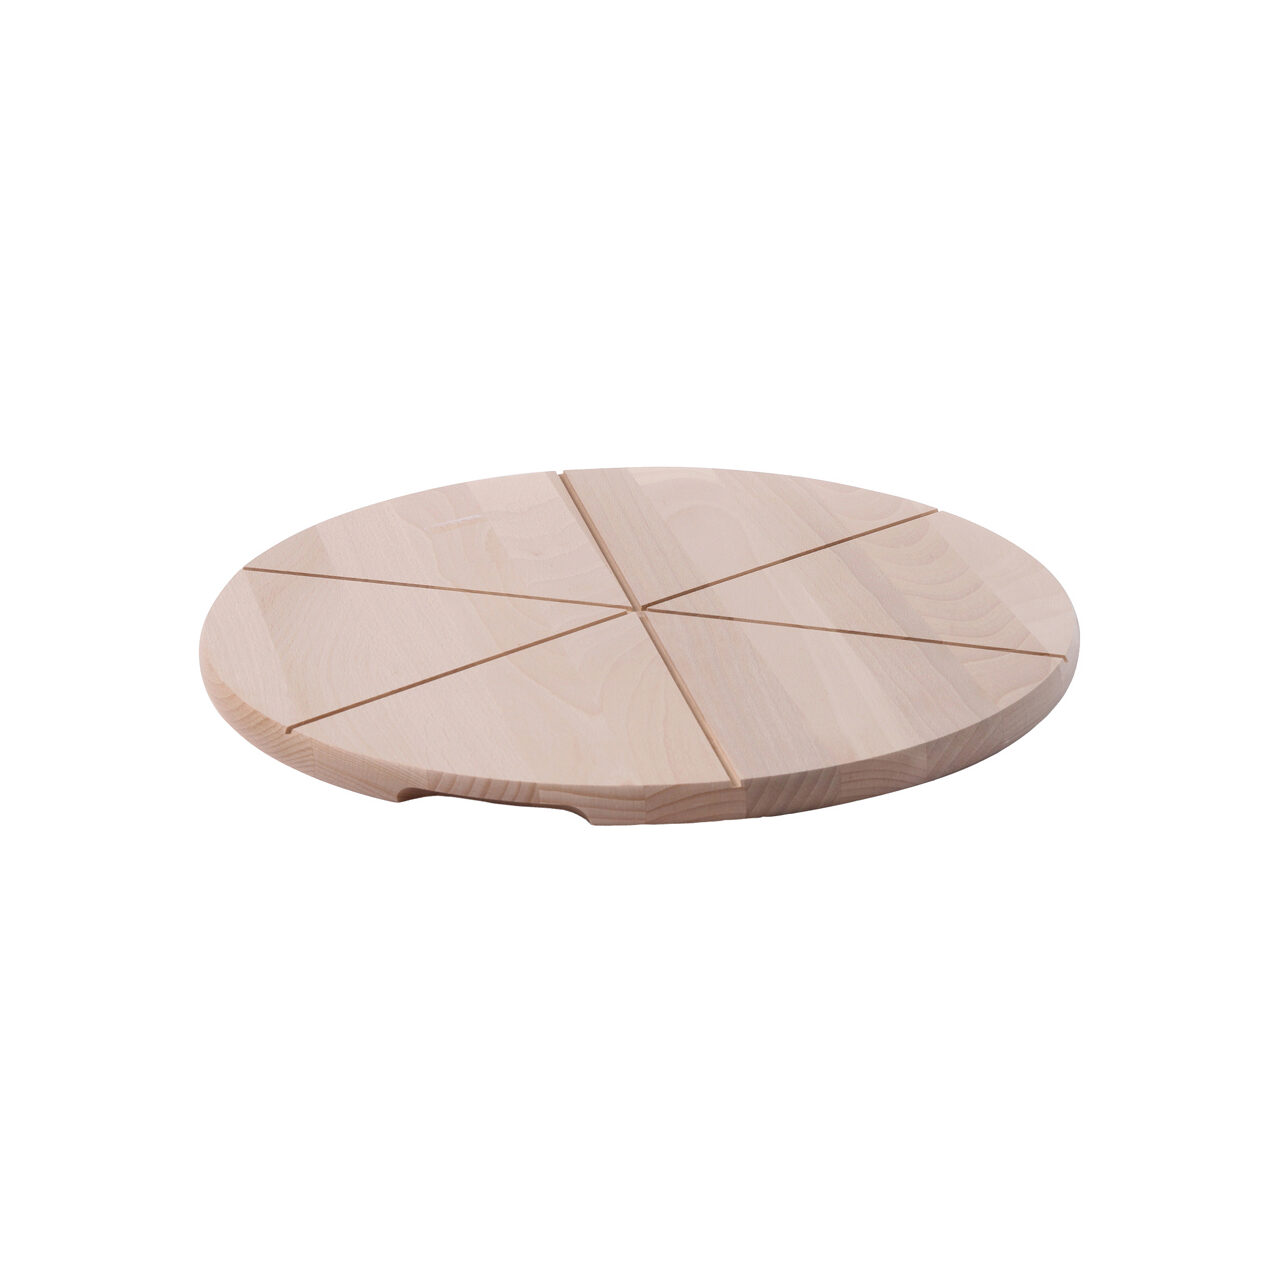 Platou/Planseta rotunda pentru pizza, diametru 50 cm, Hendi, lemn de fag, compartimentata in 6 parti